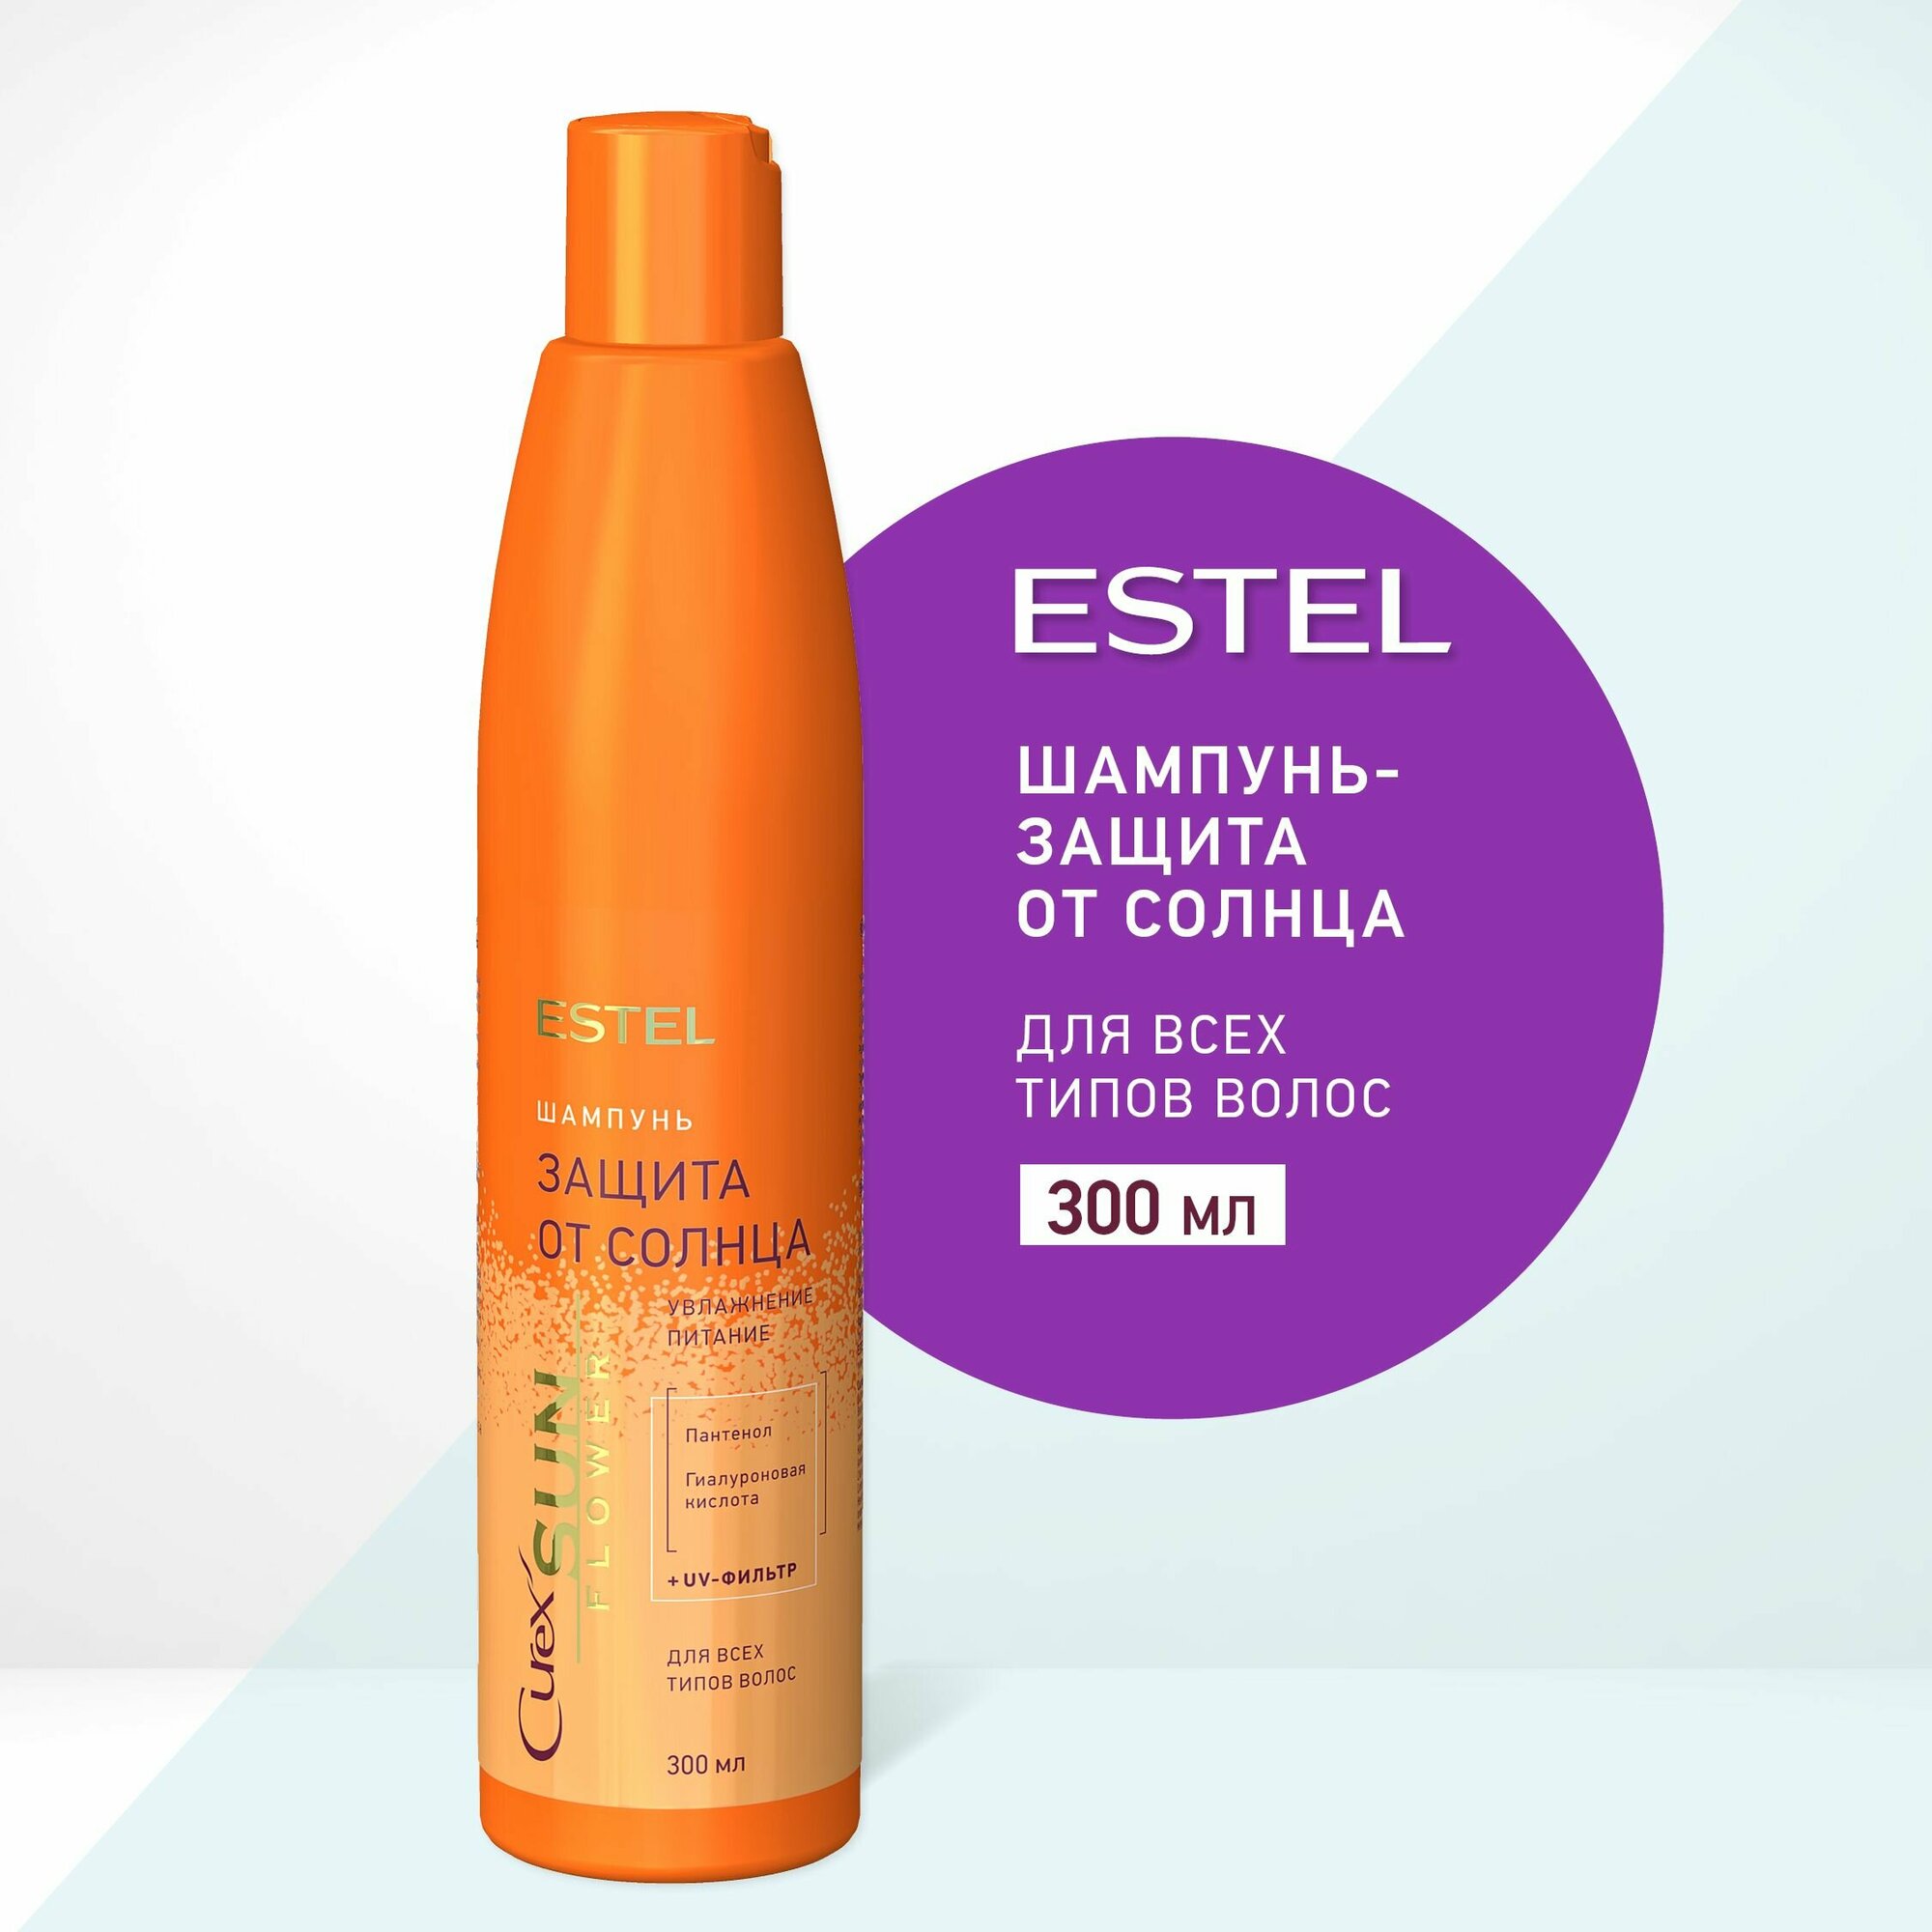 ESTEL Curex SUNFLOWER, Шампунь-защита от солнца для всех типов волос (300мл)